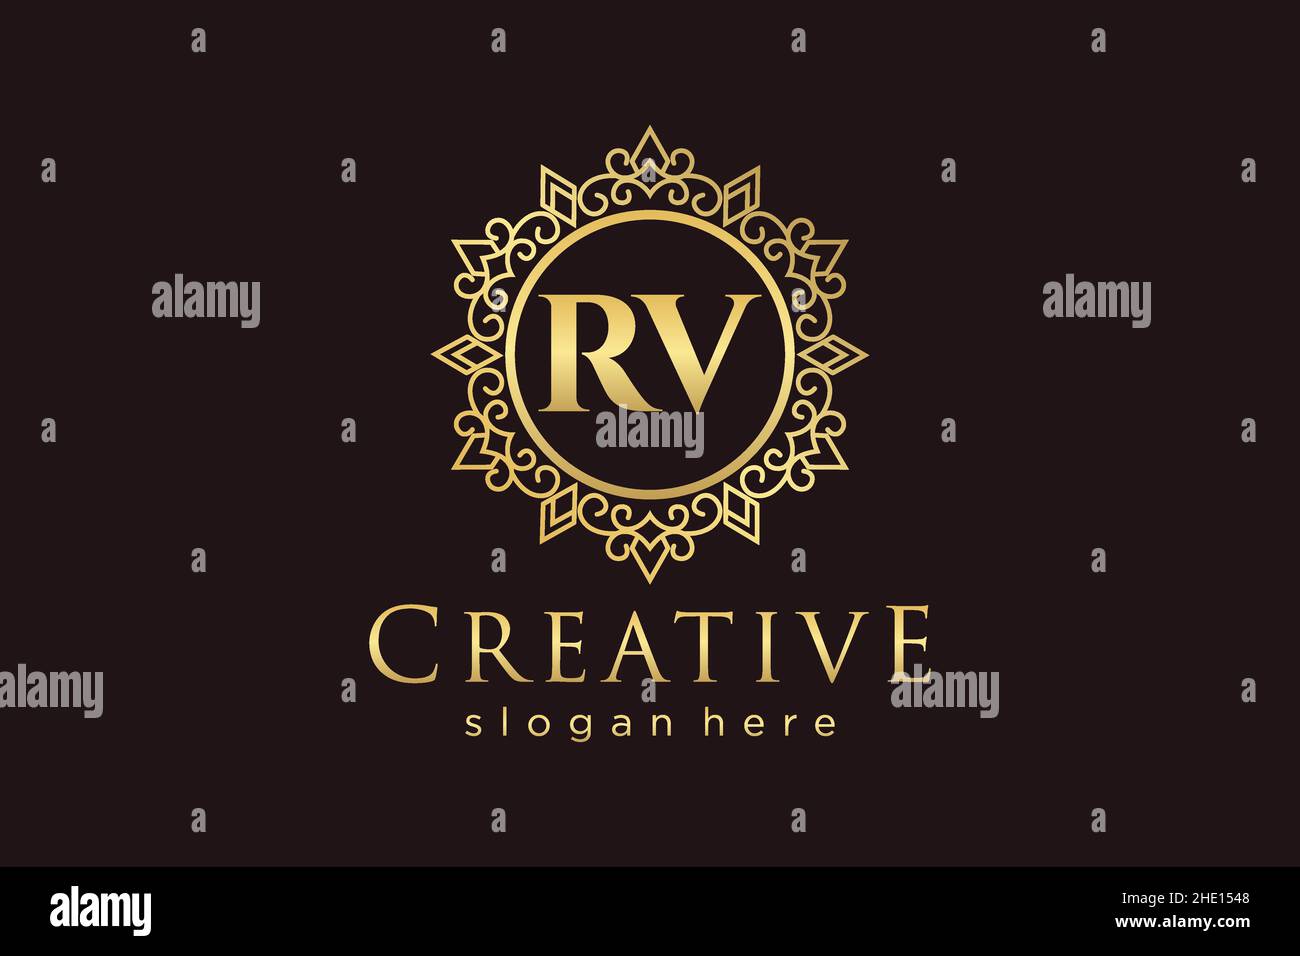 RV Initial Letter Luxury calligraphic feminine floral hand drawn heraldic monogram antique vintage style luxury logo design Premium Stock Vector